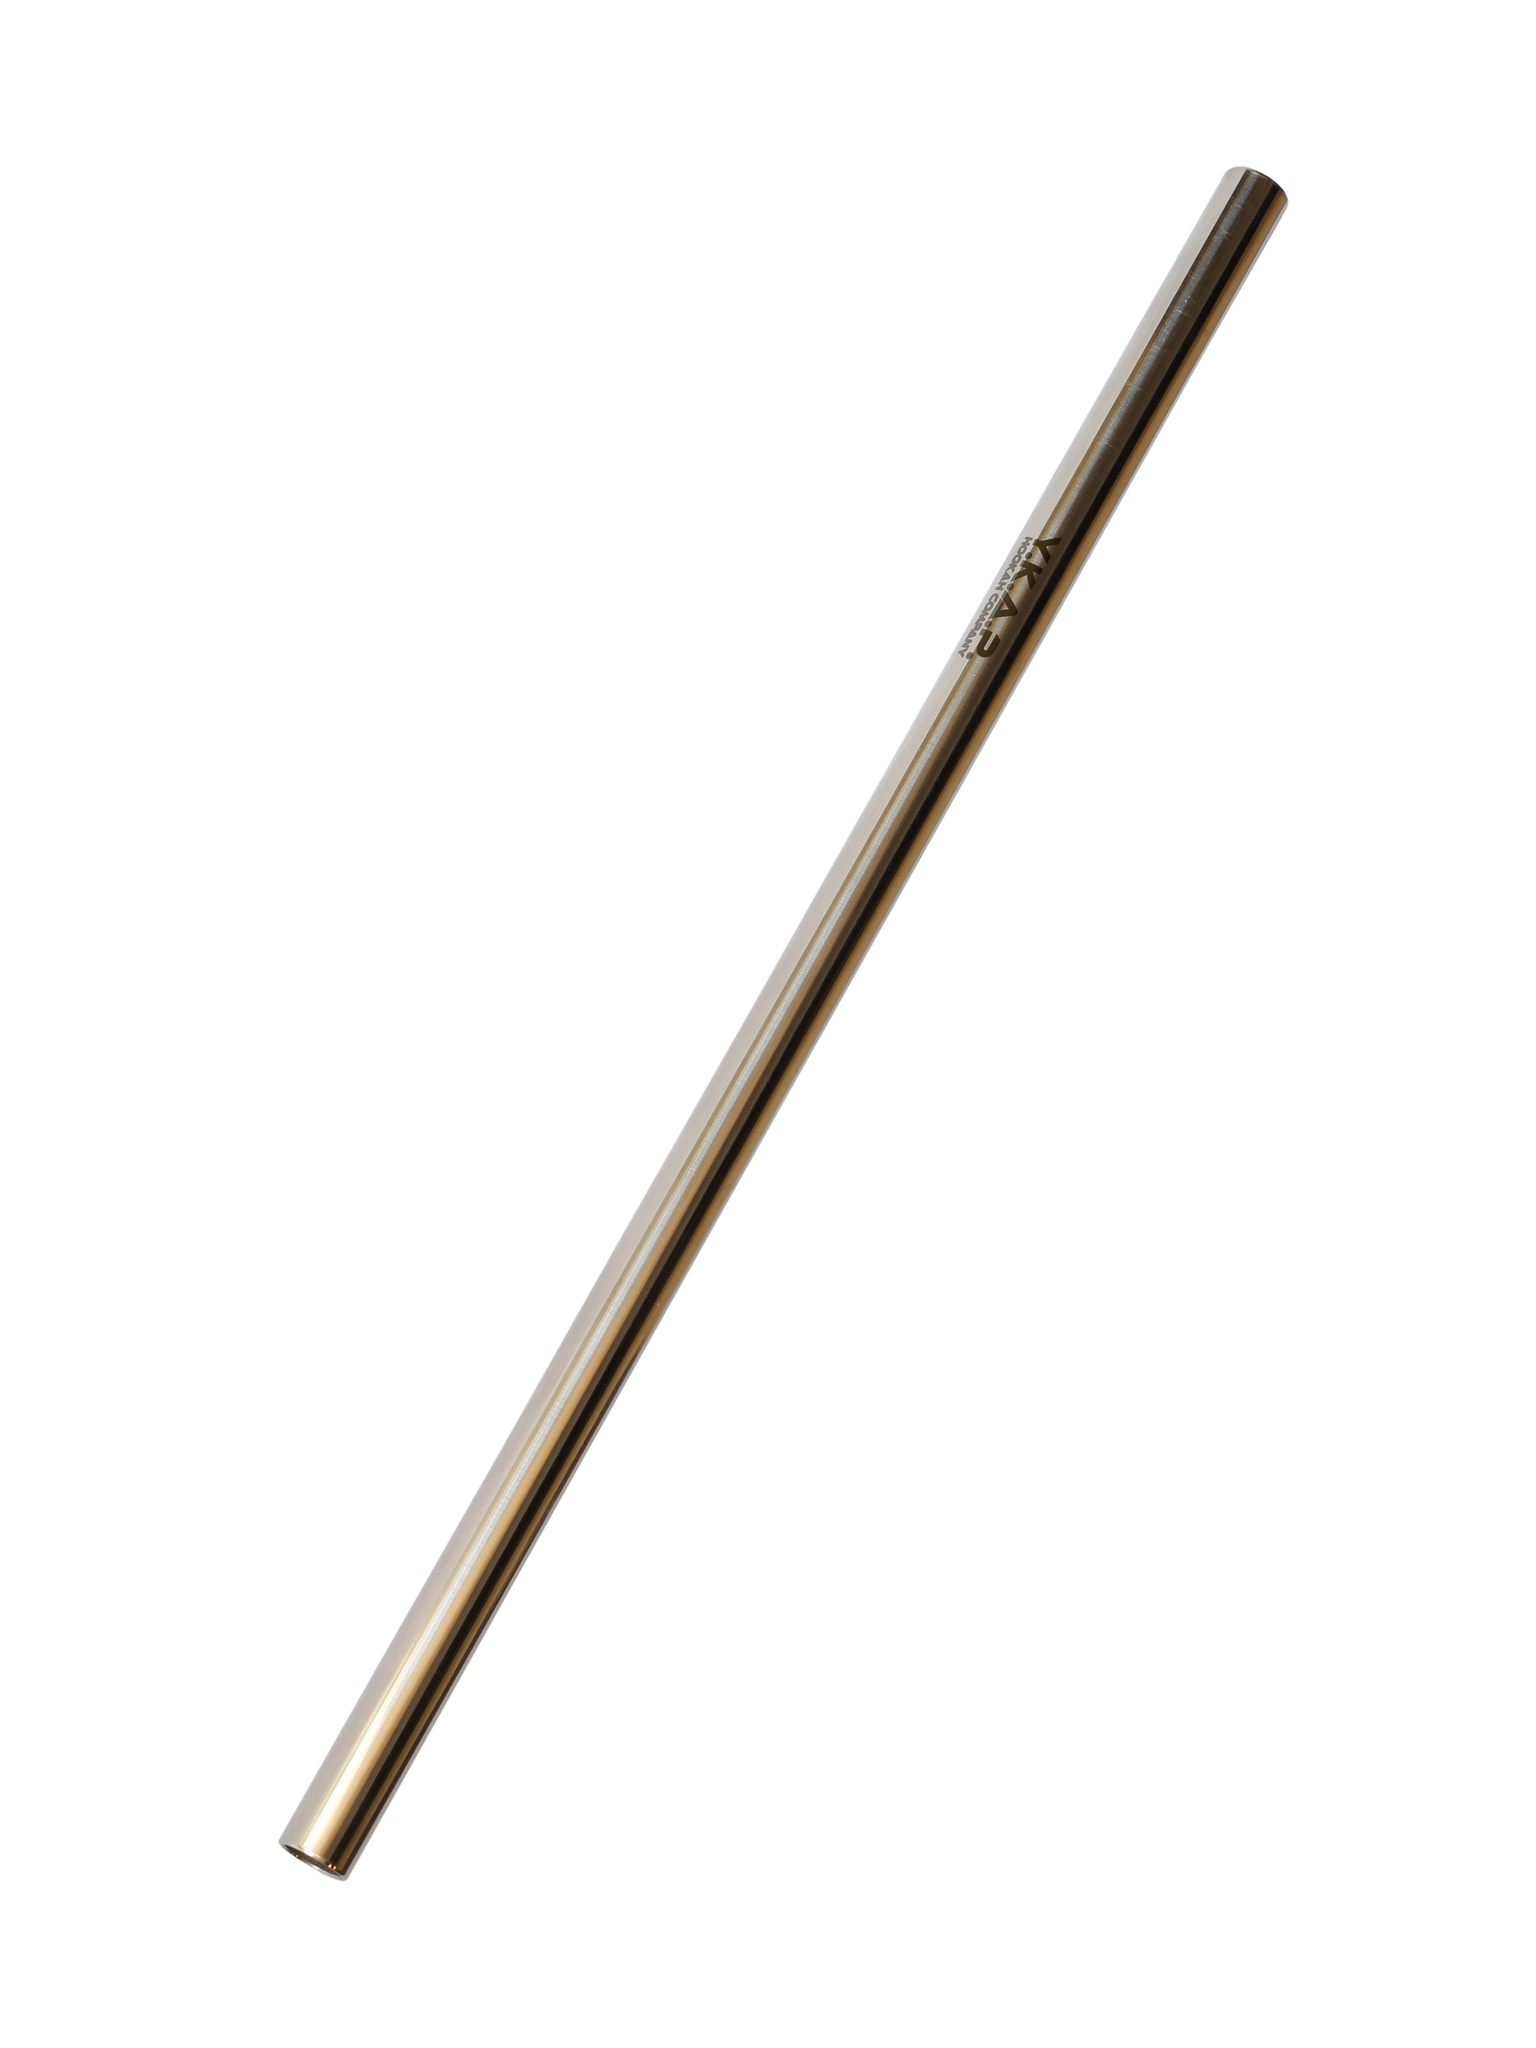 Мундштук стик. Мундштук Hoob Stick 40. Мундштук для кальяна y.k.a.p. s. Мундштук YKAP. Мундштук feo Stick.